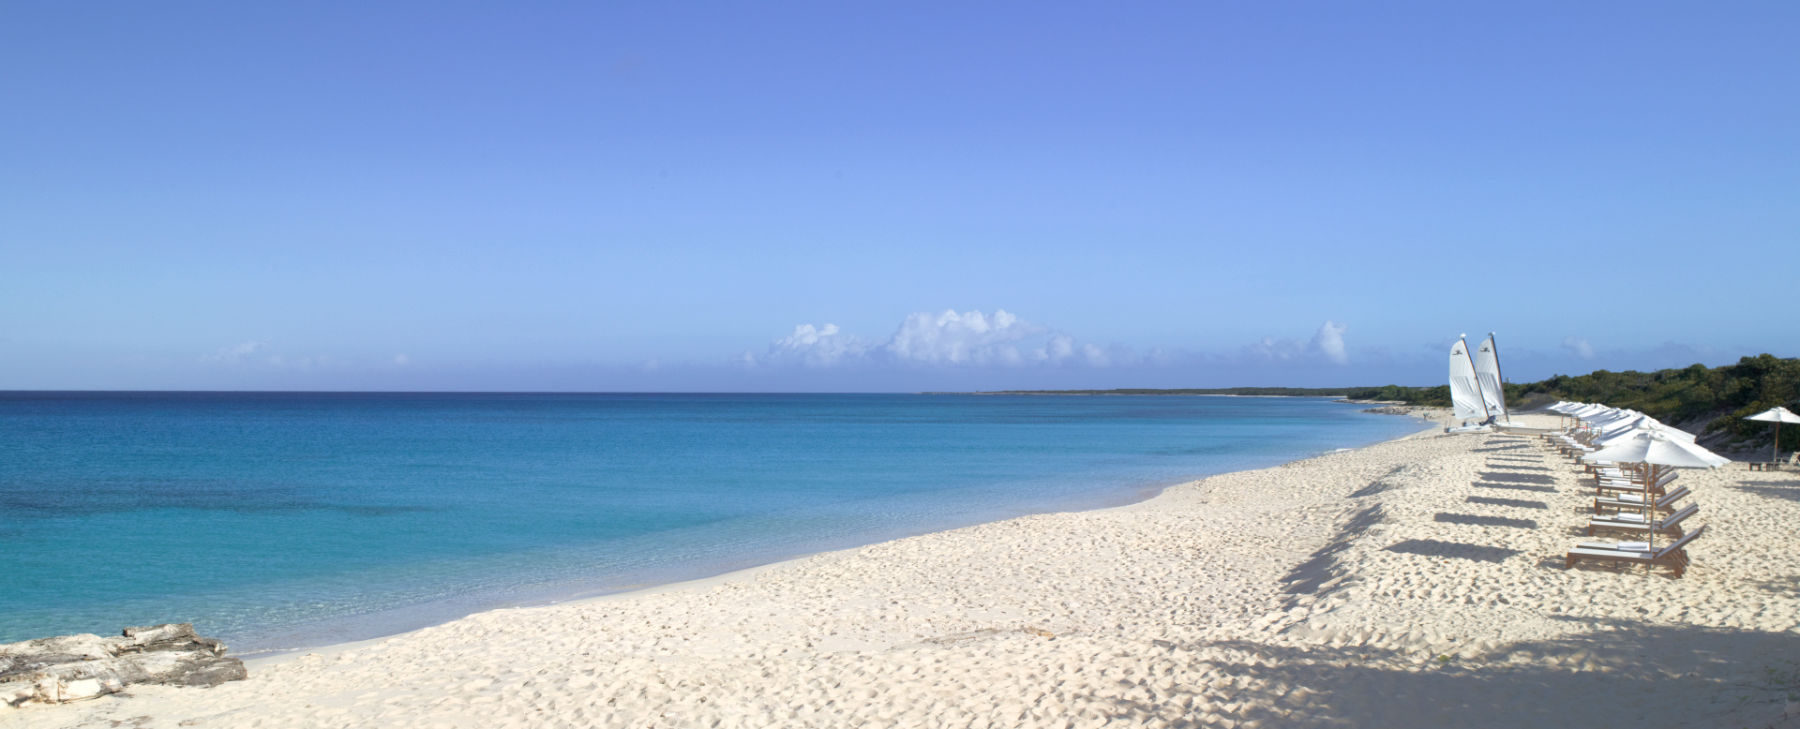 Luxusreise Große Antillen Karibik – Argentum Reisen